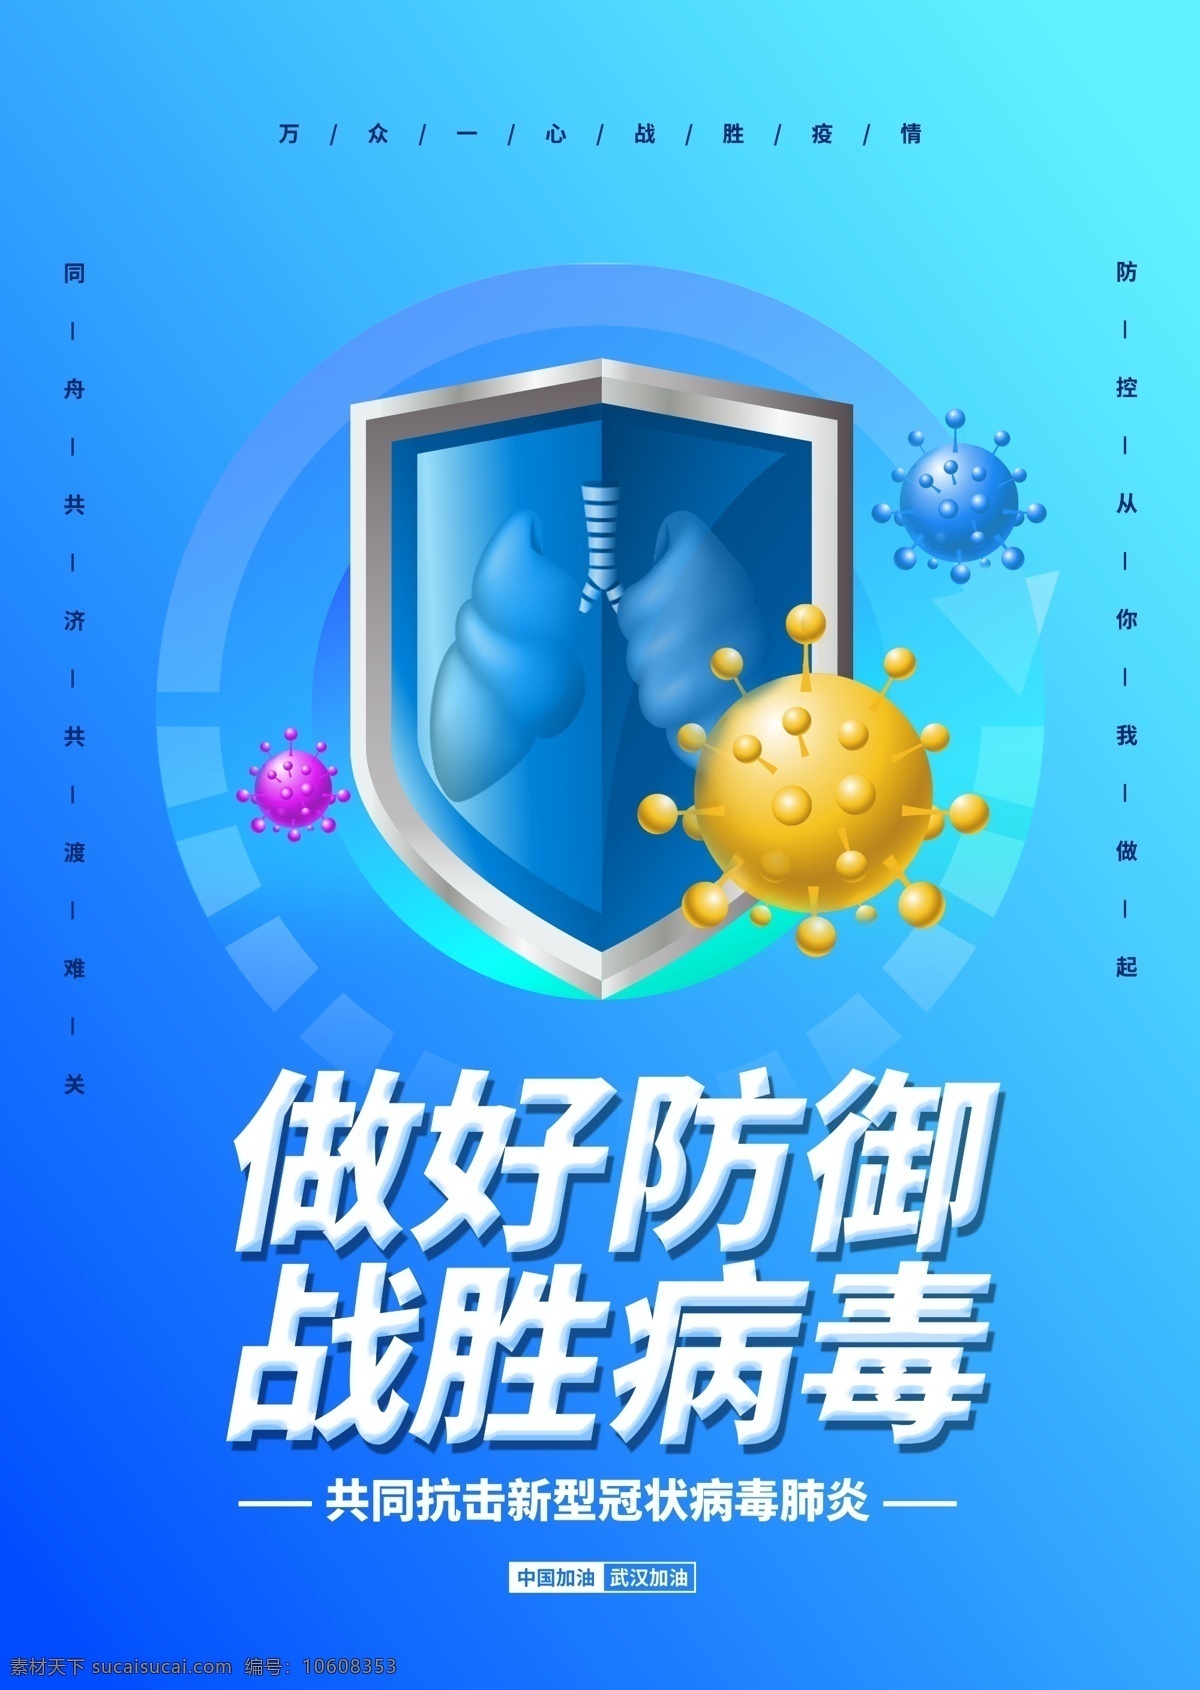 新型 冠状 病毒 做好 防御战 蓝色 简约 冠状病毒 防御 战胜 海报